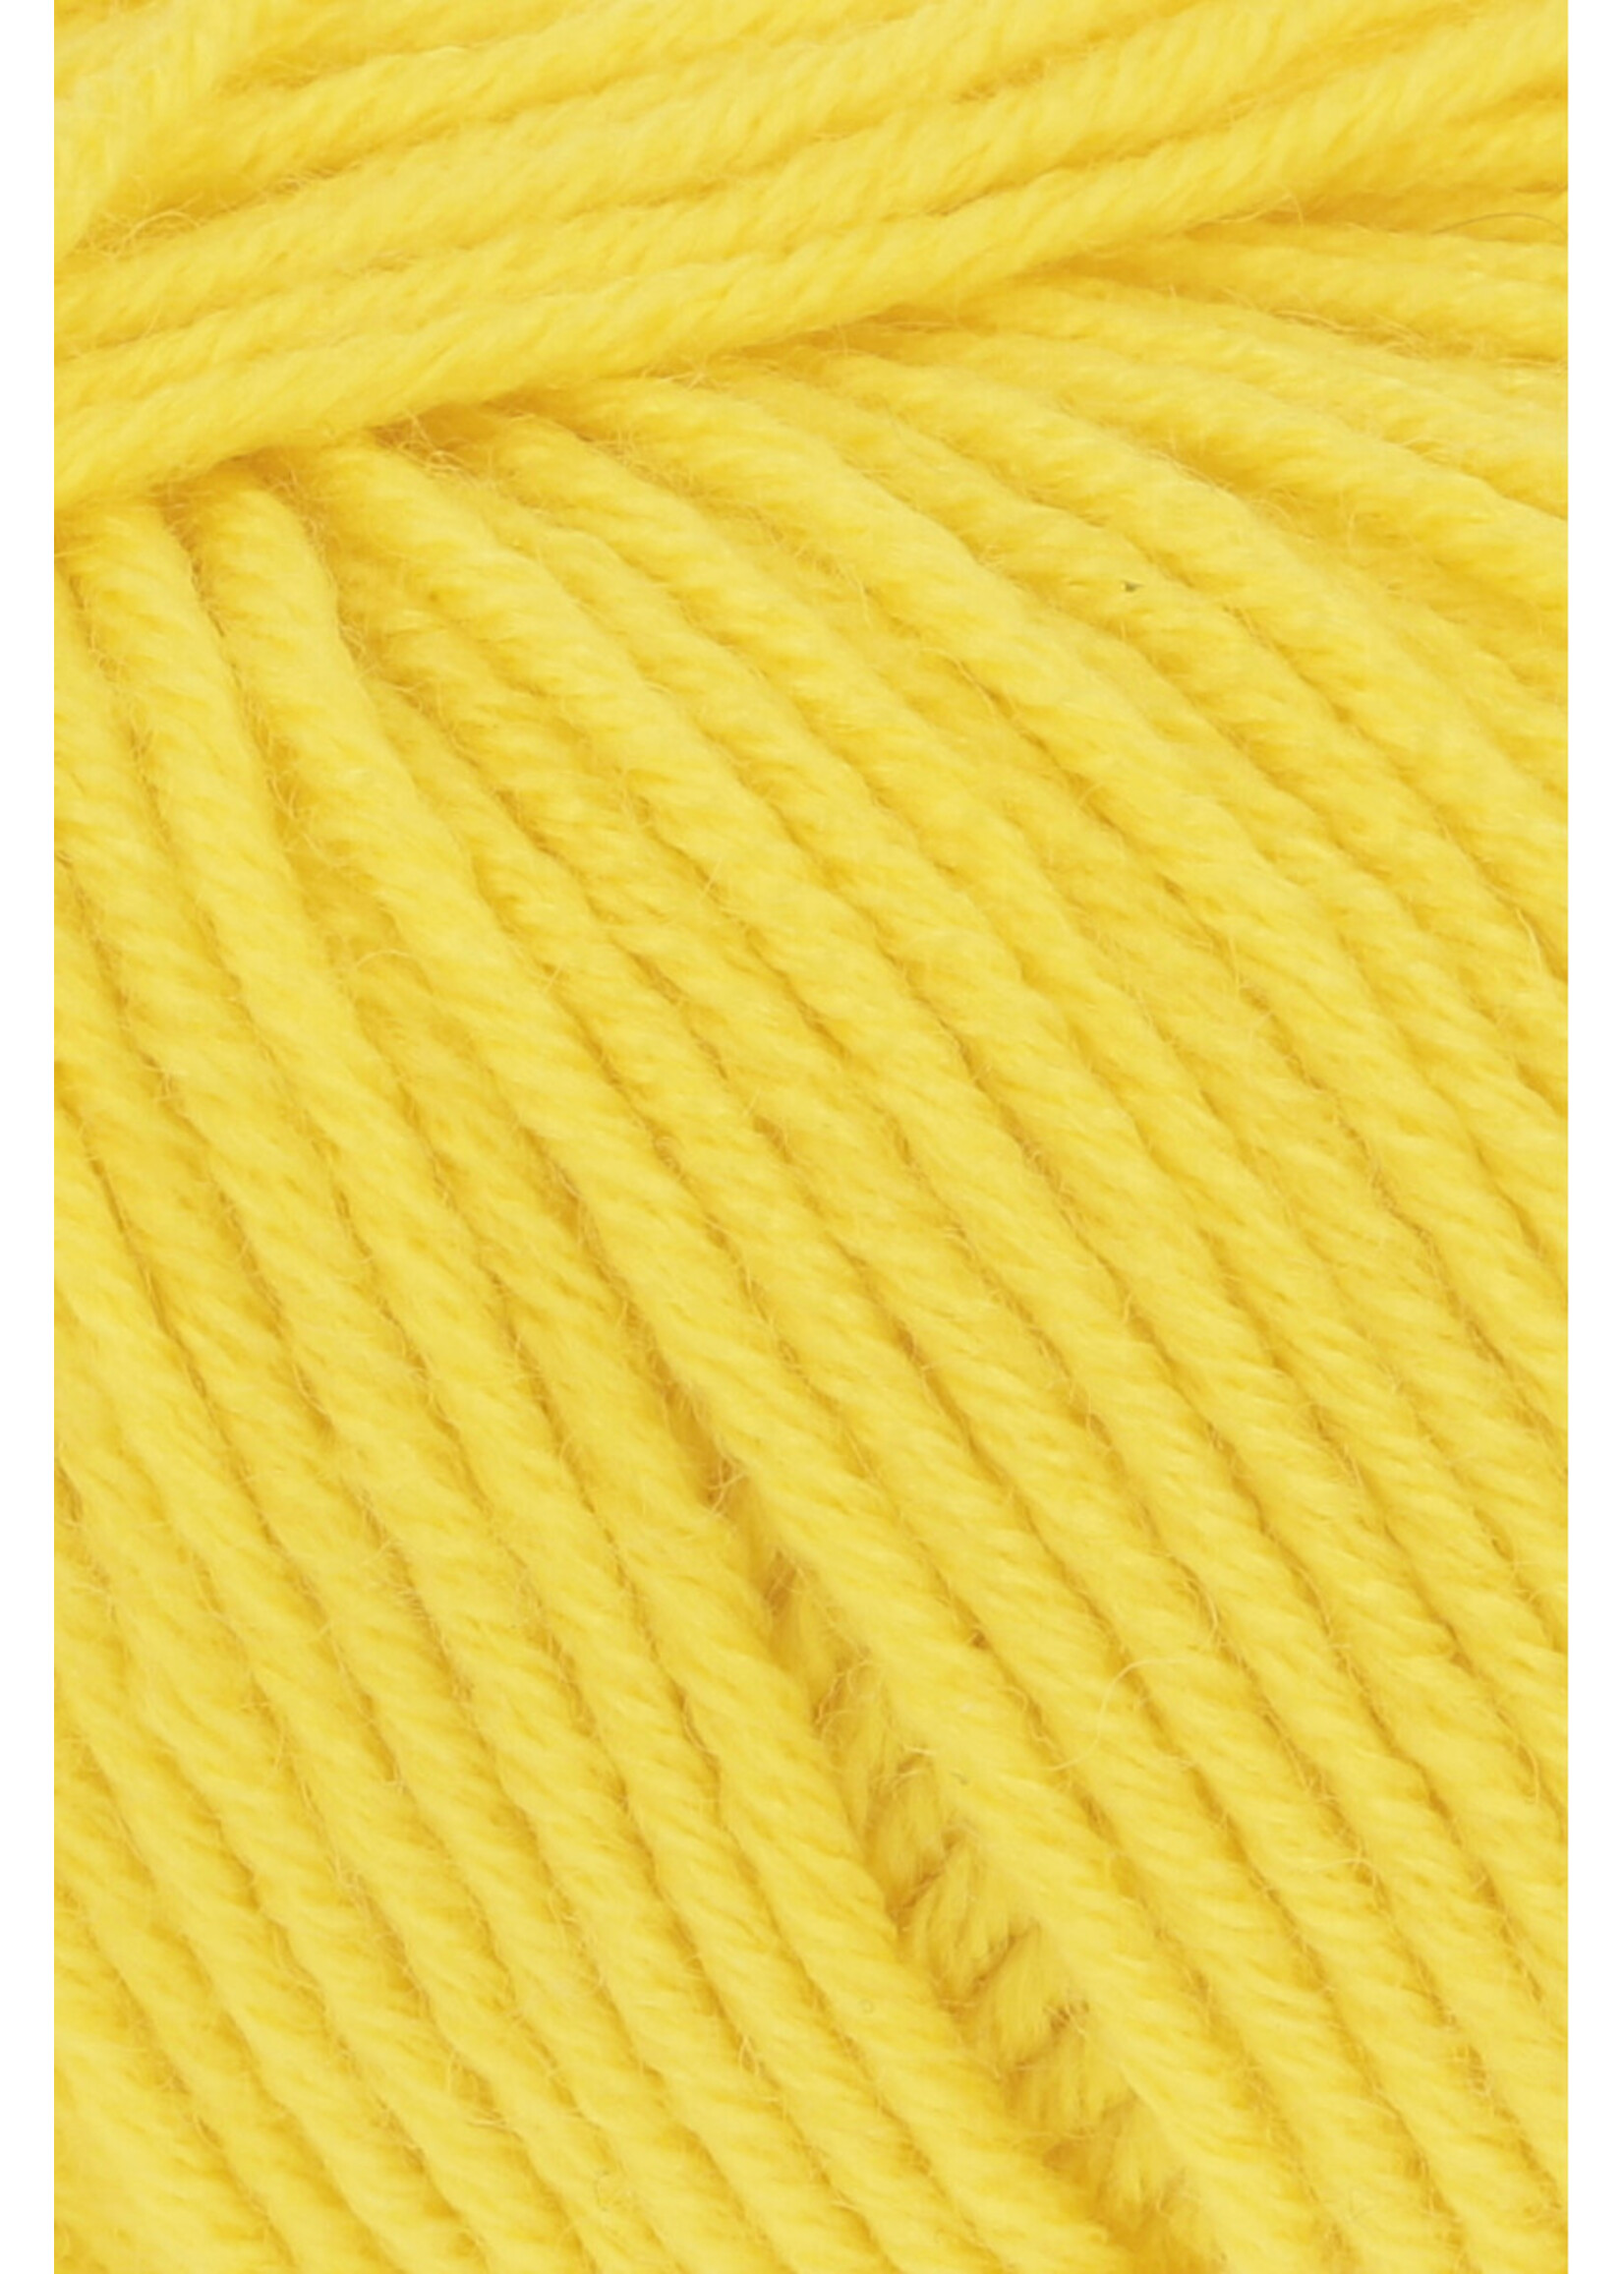 LangYarns Poseidon - 0014 yellow